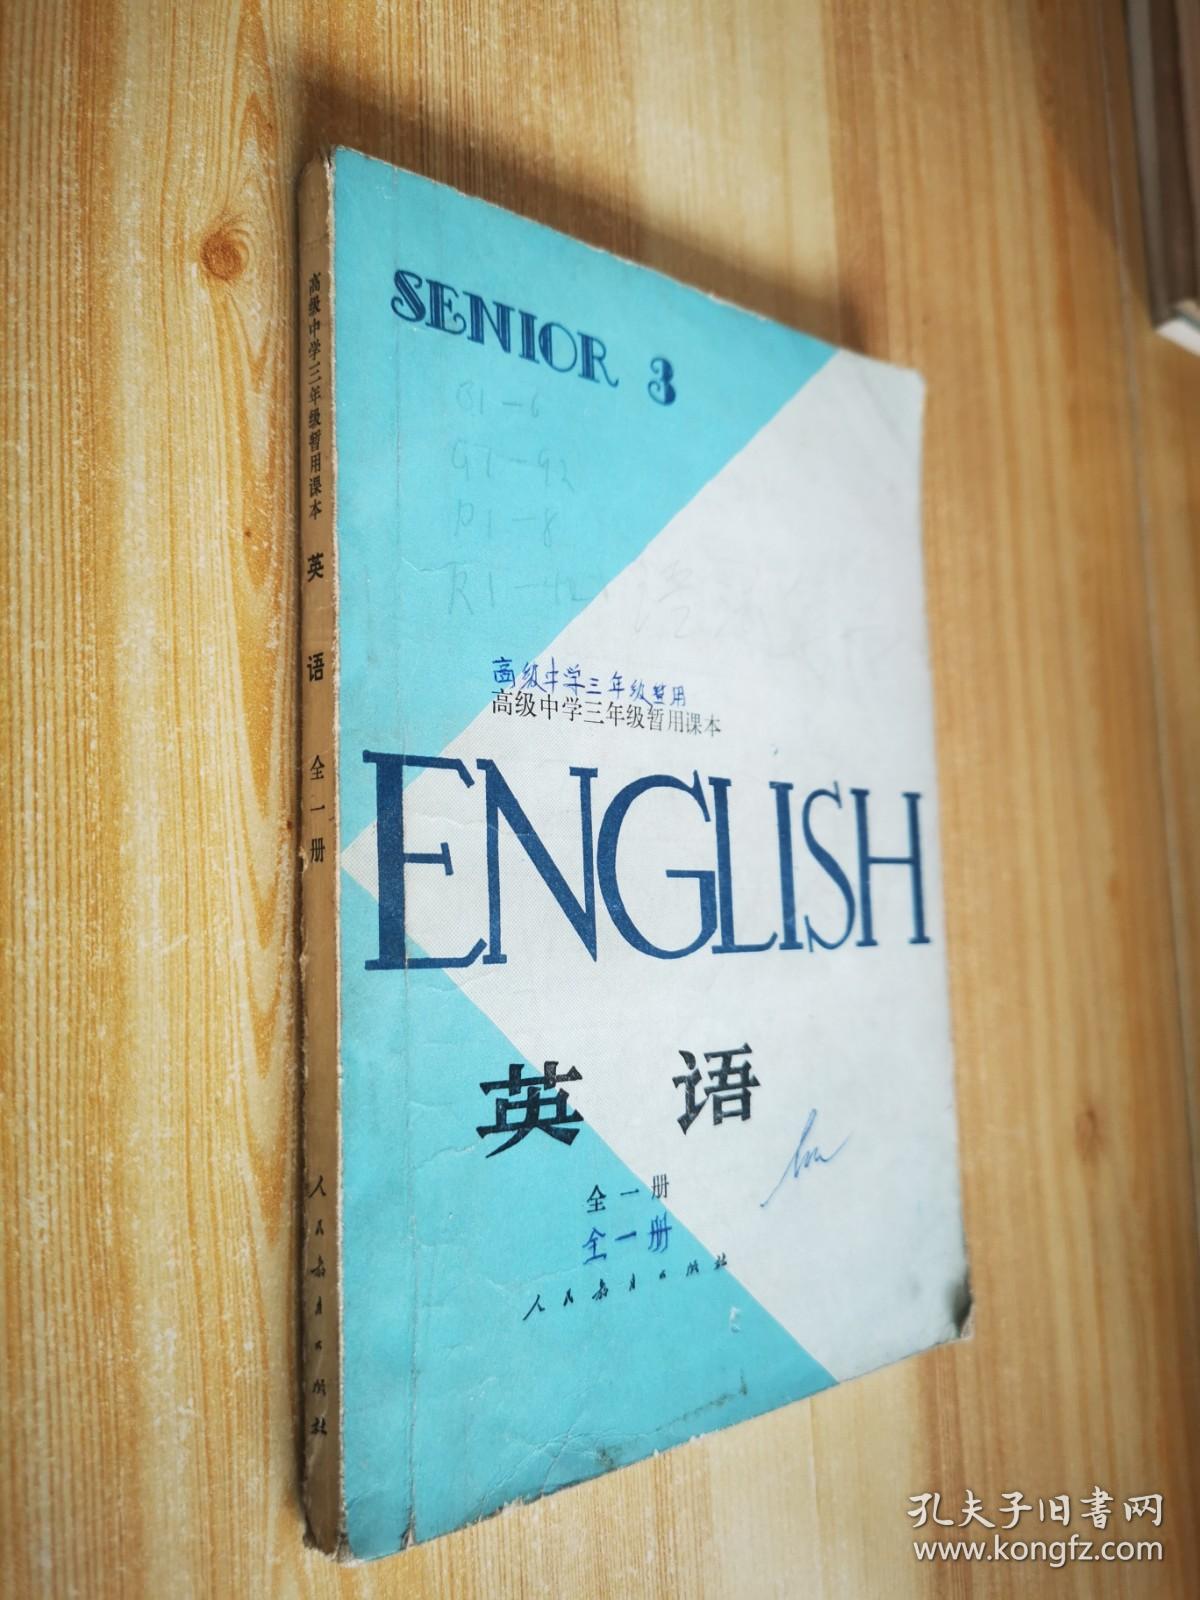 英语全一册